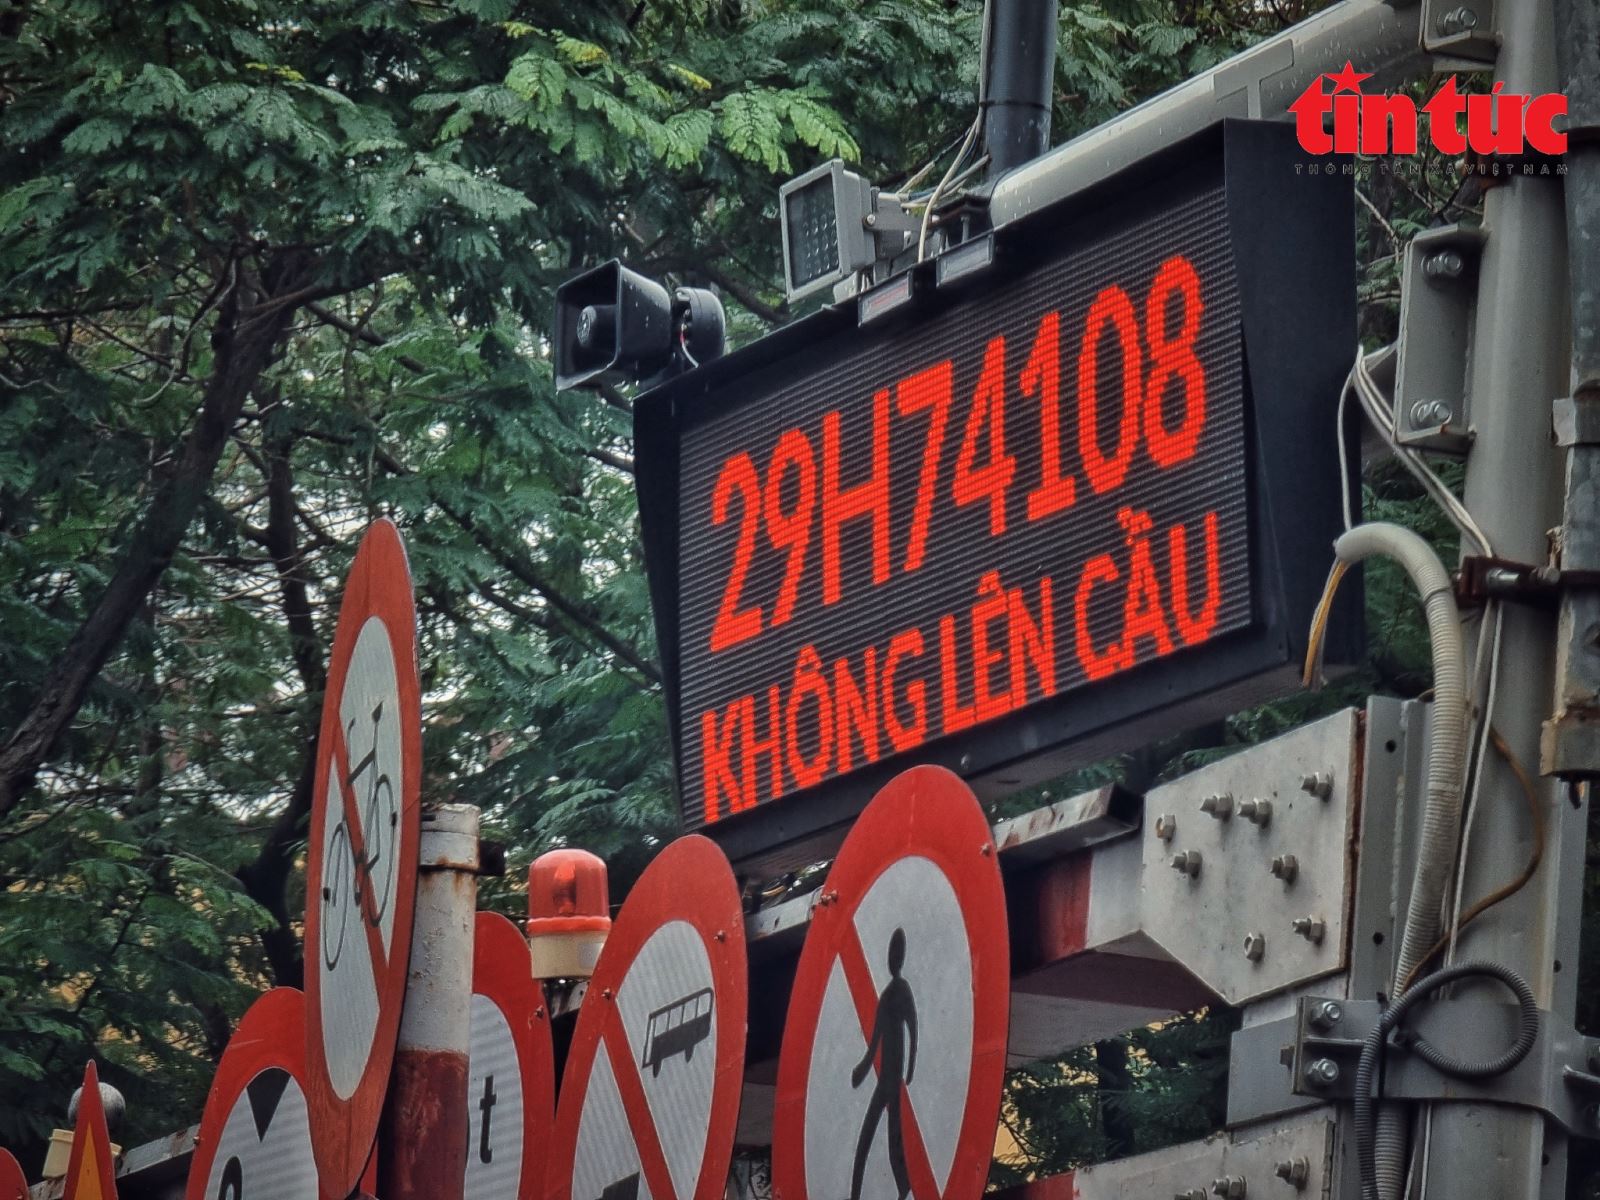 Cận cảnh biển báo thông minh tại các 'điểm đen' giao thông ở Hà Nội - Ảnh 5.